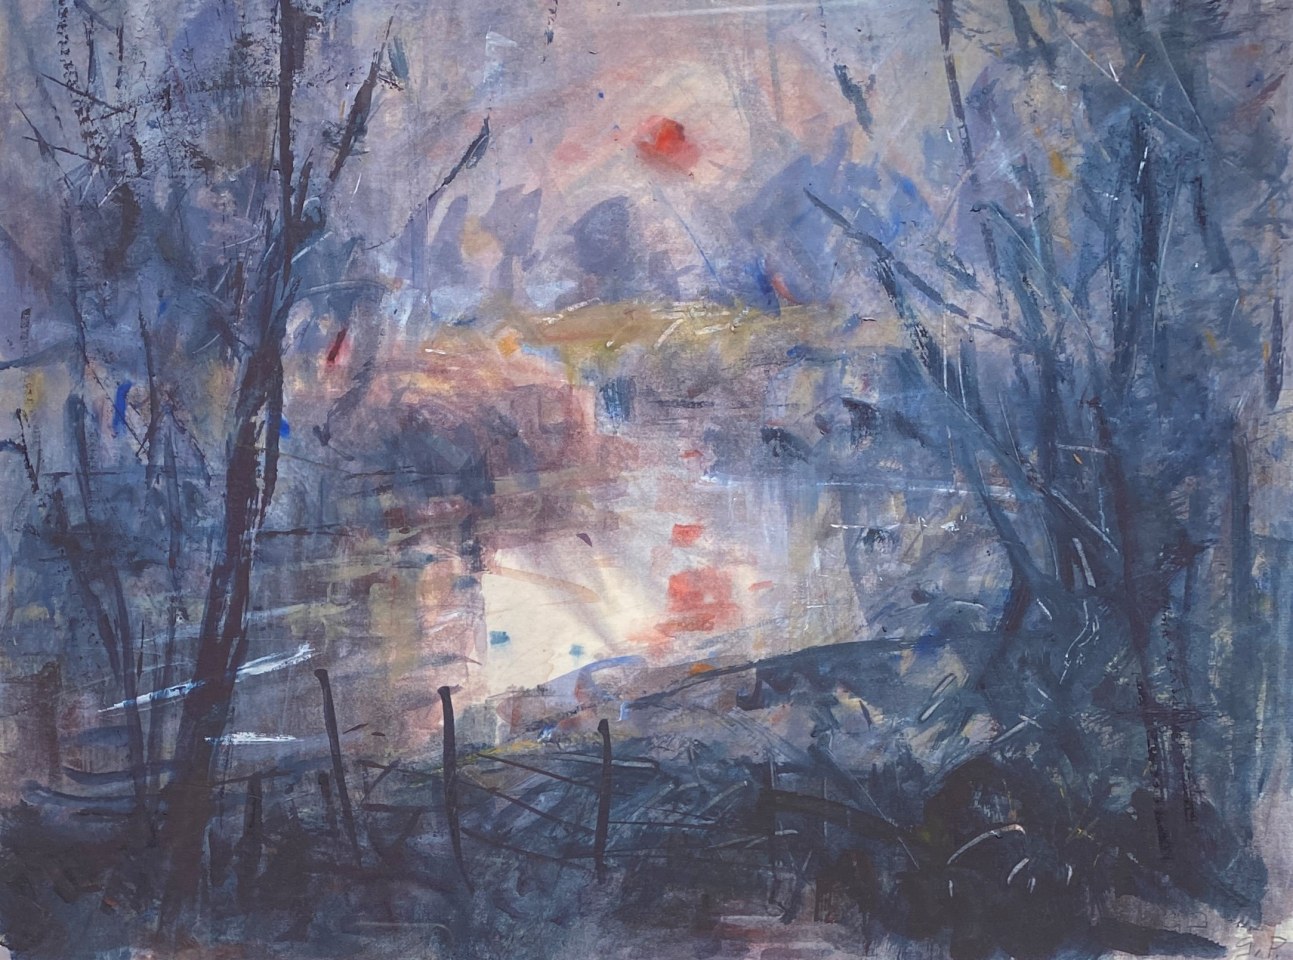 Gareth Parry, Yr Afon, Machlud drwy Niwl / The River, Sunset through Mist